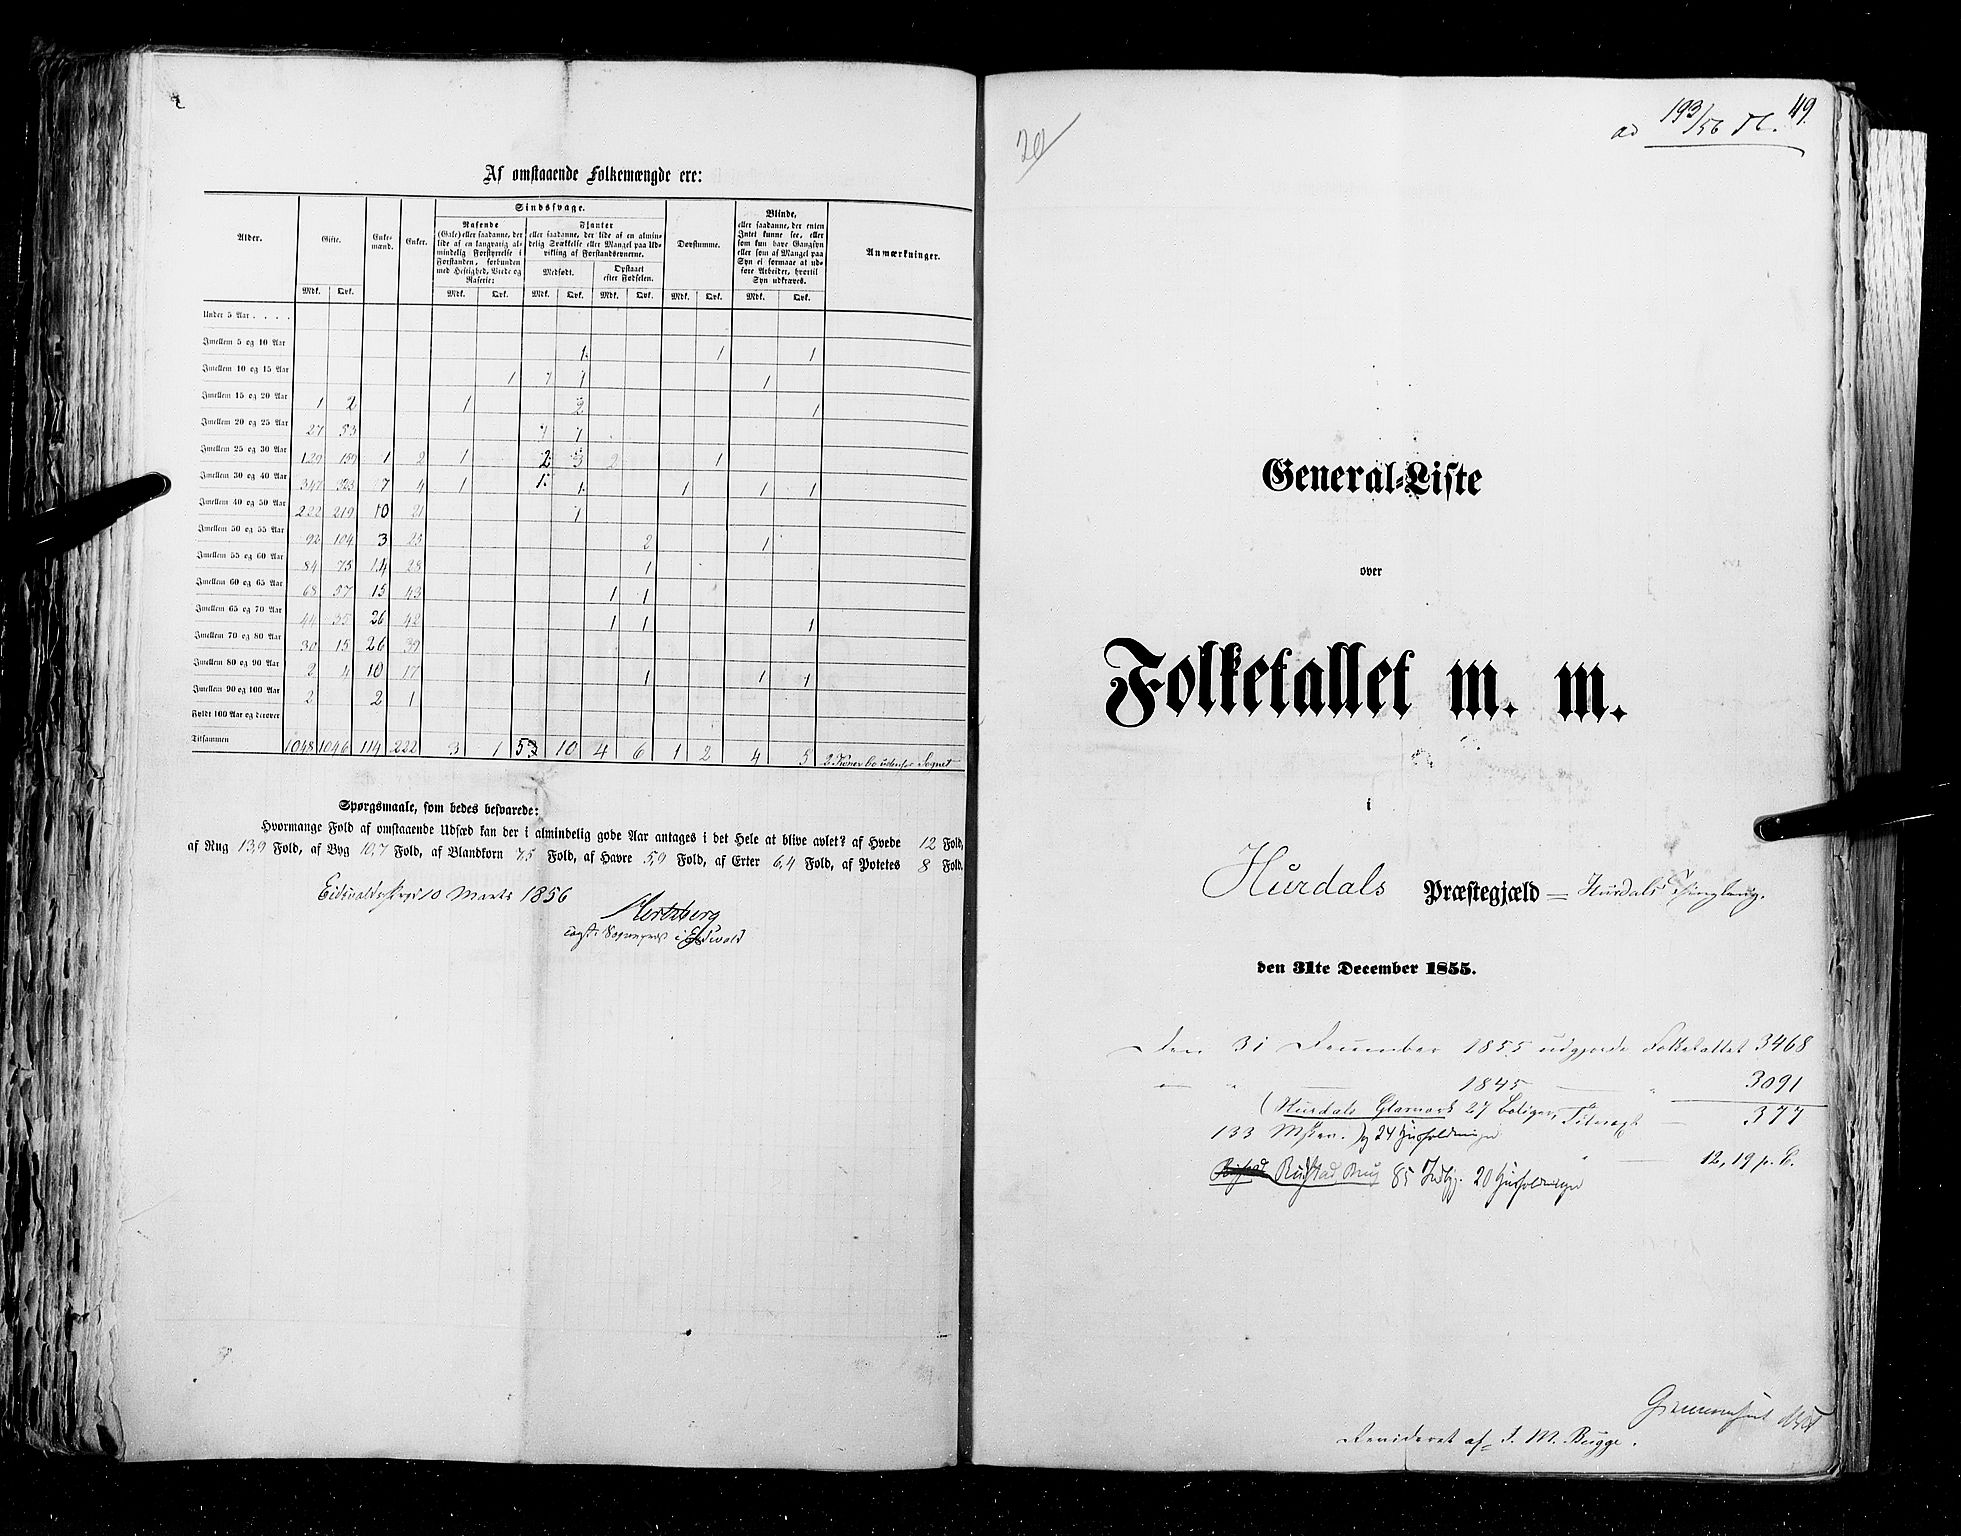 RA, Census 1855, vol. 1: Akershus amt, Smålenenes amt og Hedemarken amt, 1855, p. 119